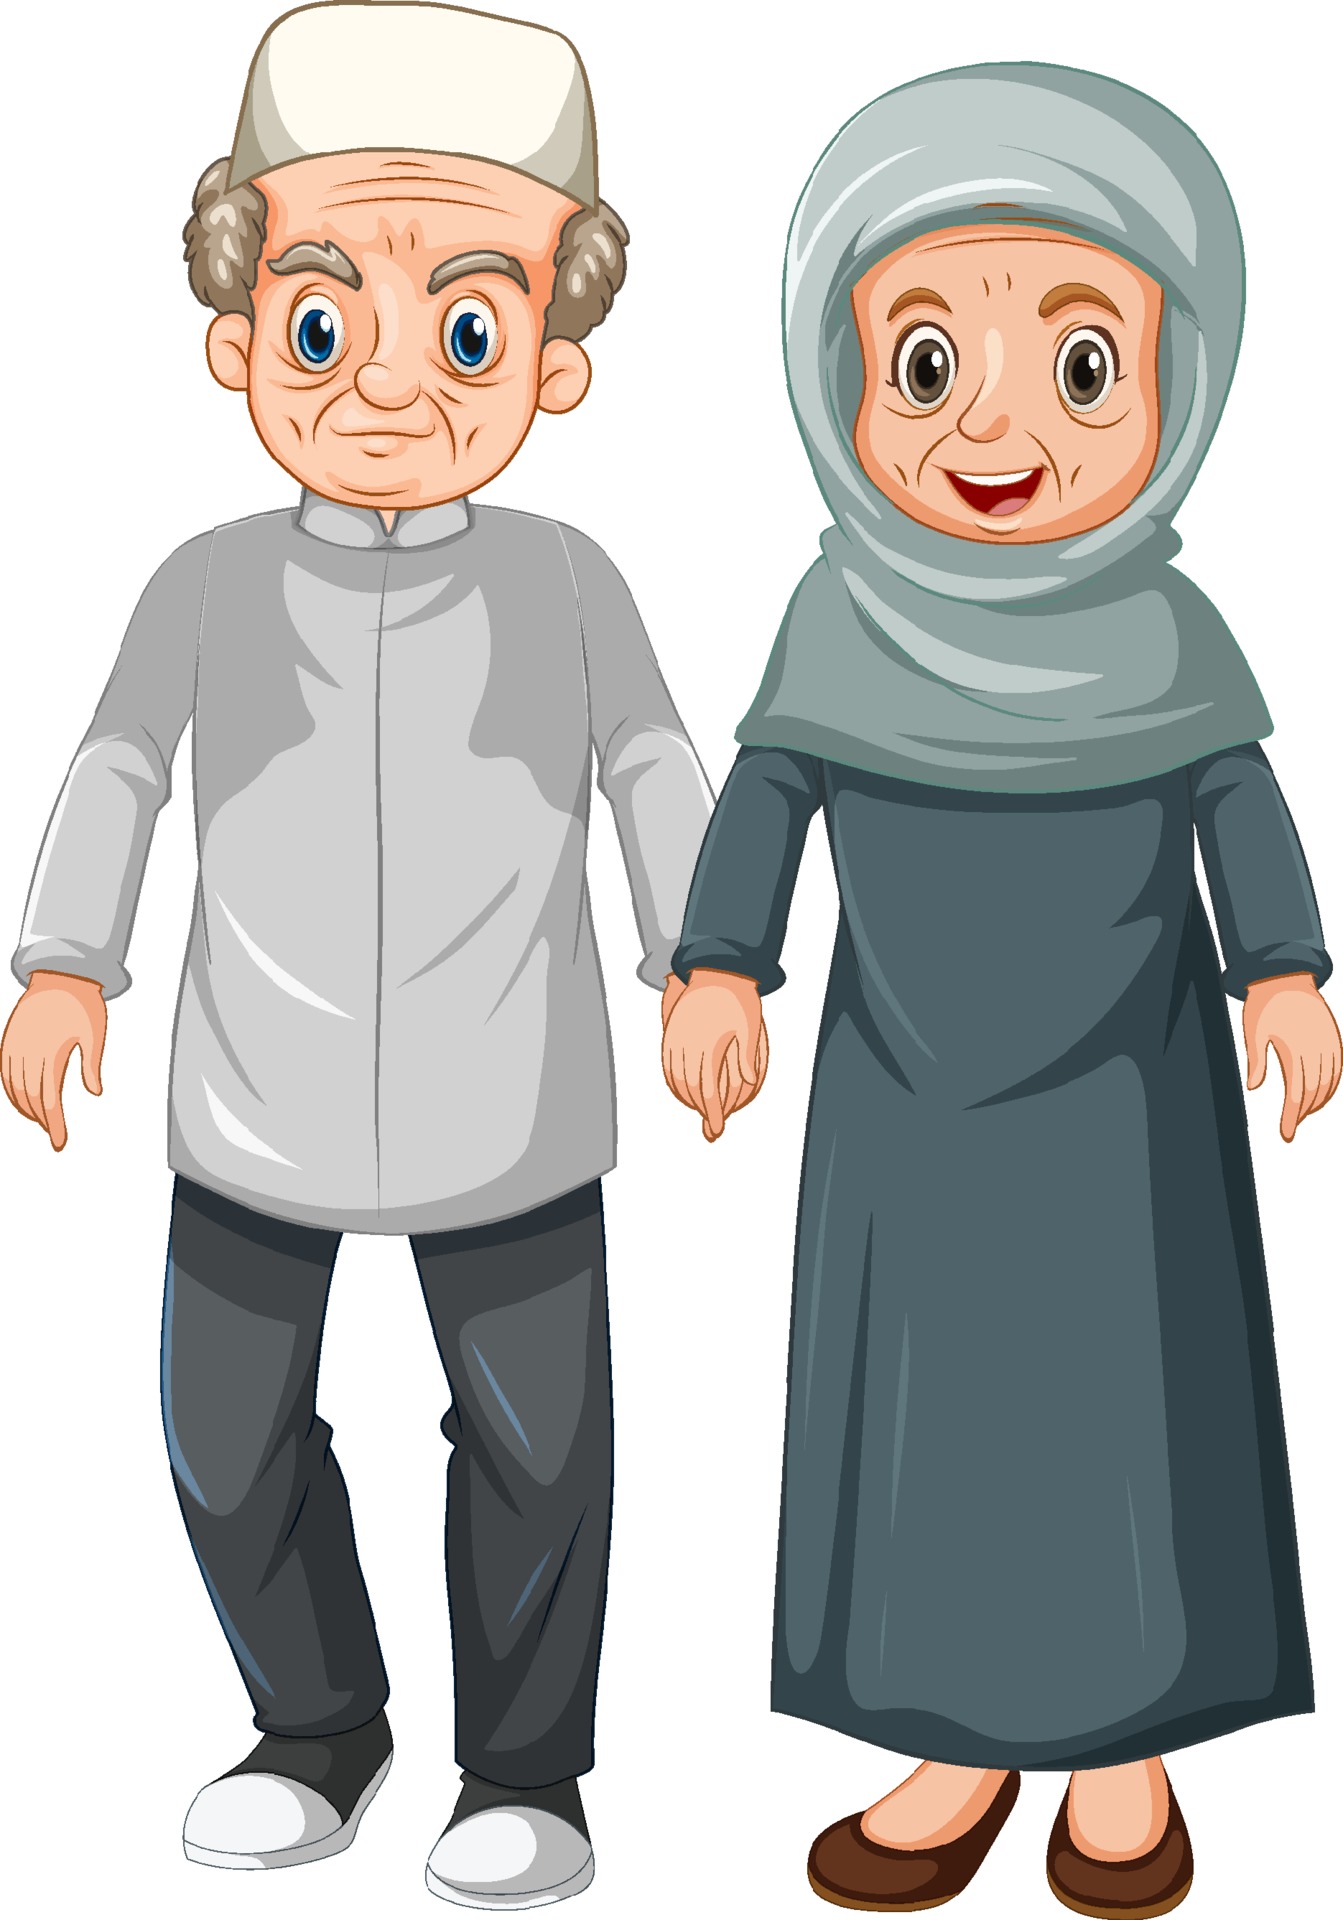 Elderly muslim couple cartoon character 2203264 Vector Art at Vecteezy